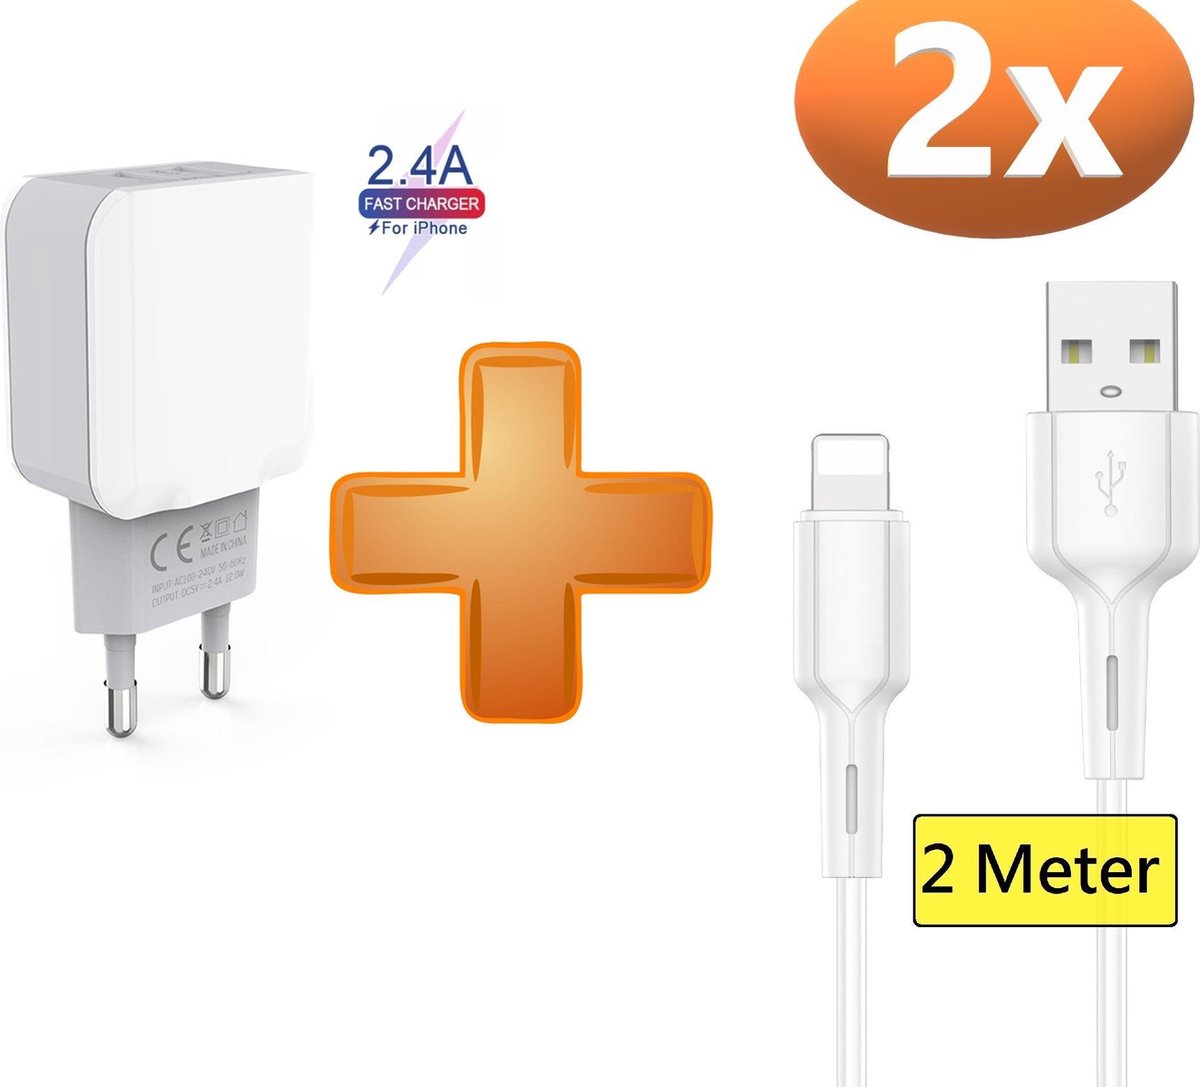 Chargeur secteur + câble USB pour iPhone 5/5S/5C/6/7/8/X/XR/XS/XS MAX